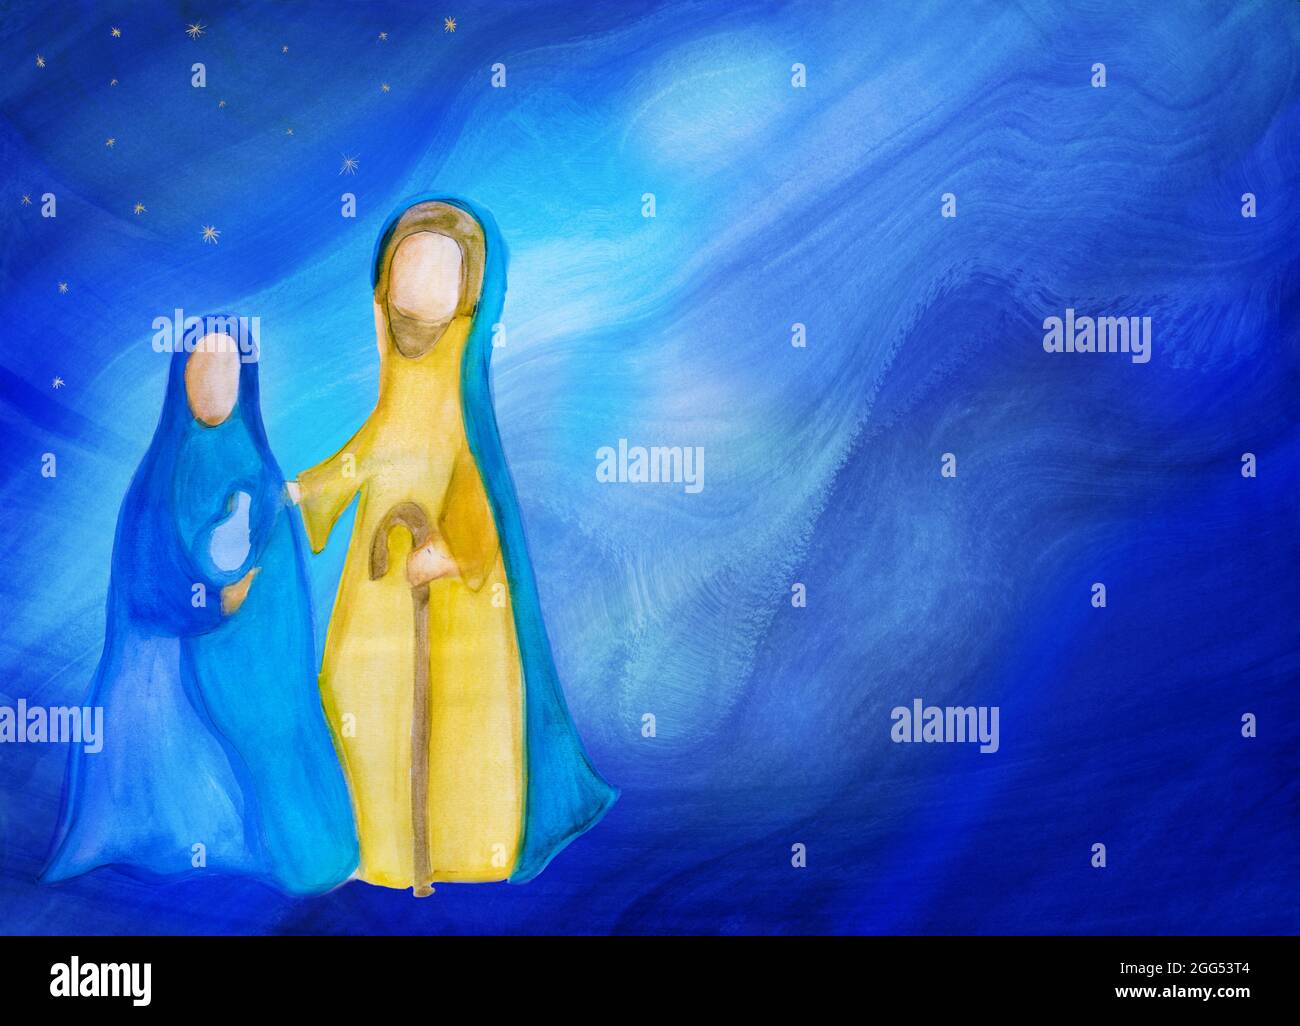 Presepio di Betlemme. Astratto acquerello illustrazione della scena di Natale che rappresenta la Santa famiglia con Giuseppe Maria e Gesù bambino. Stella blu Foto Stock